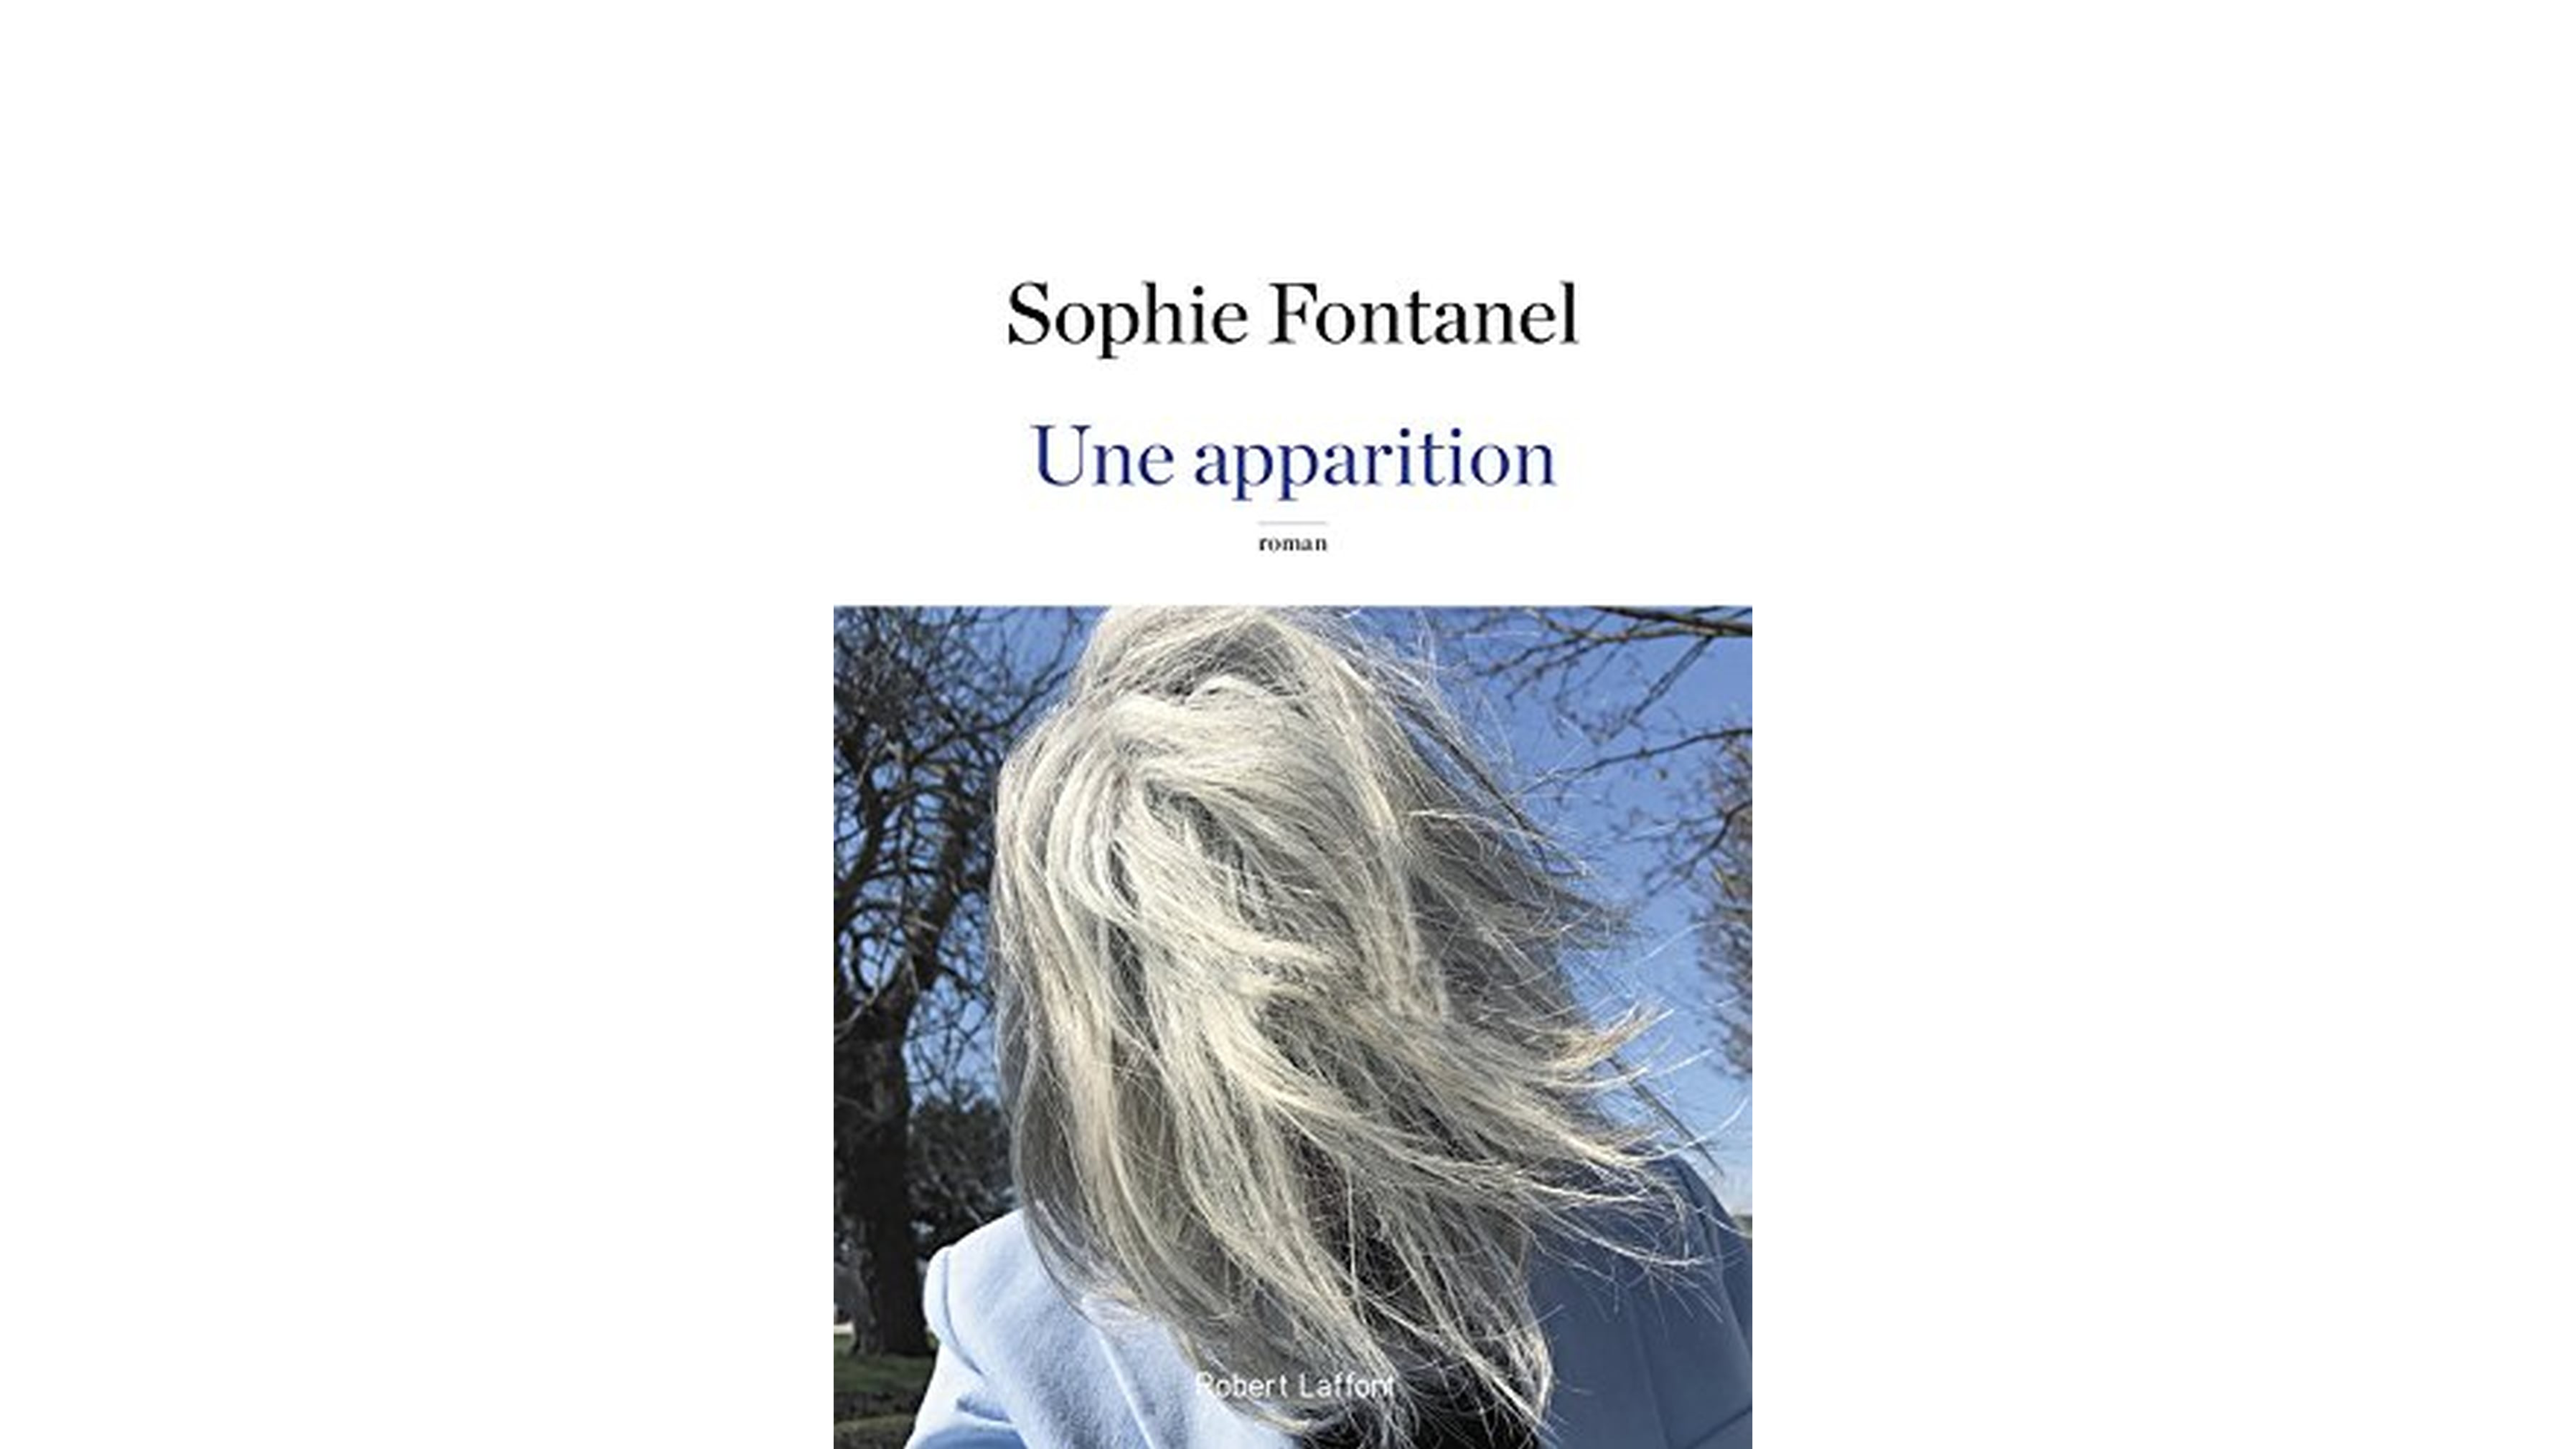 L'oeuvre de Sophie Fontanel, L'apparition